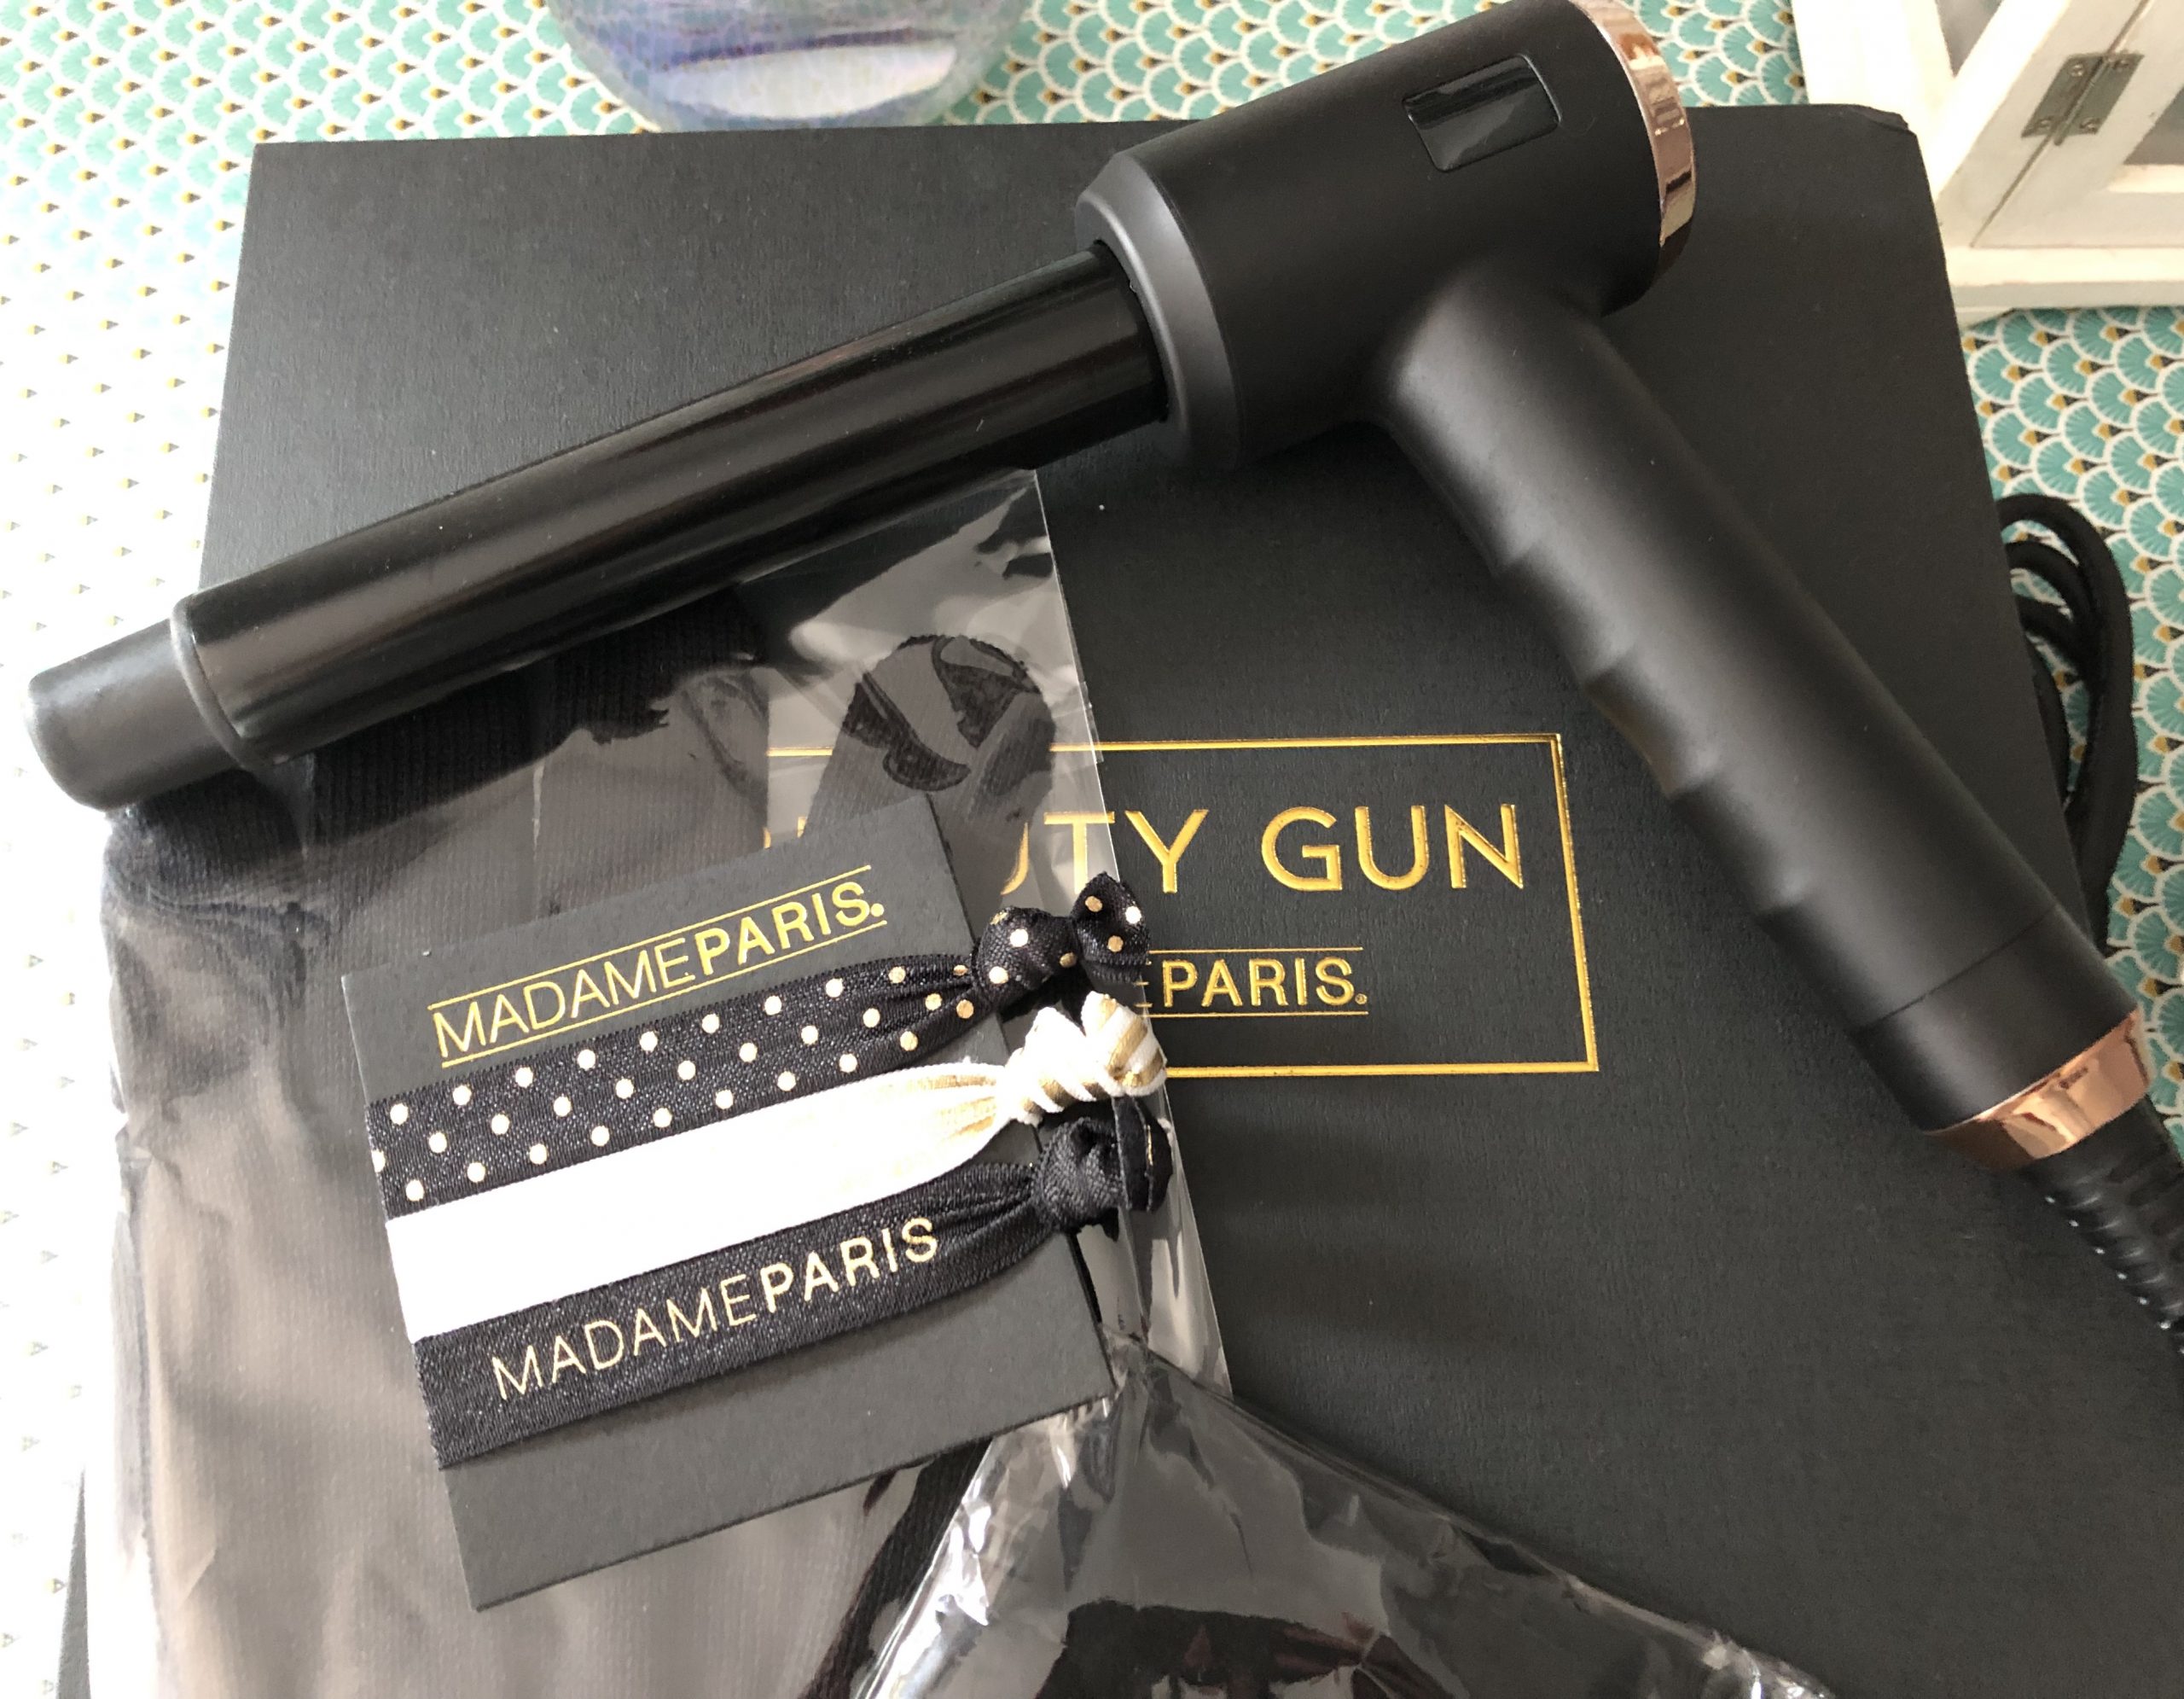  Nous avons testé pour vous le Beauty Gun – Madame Paris